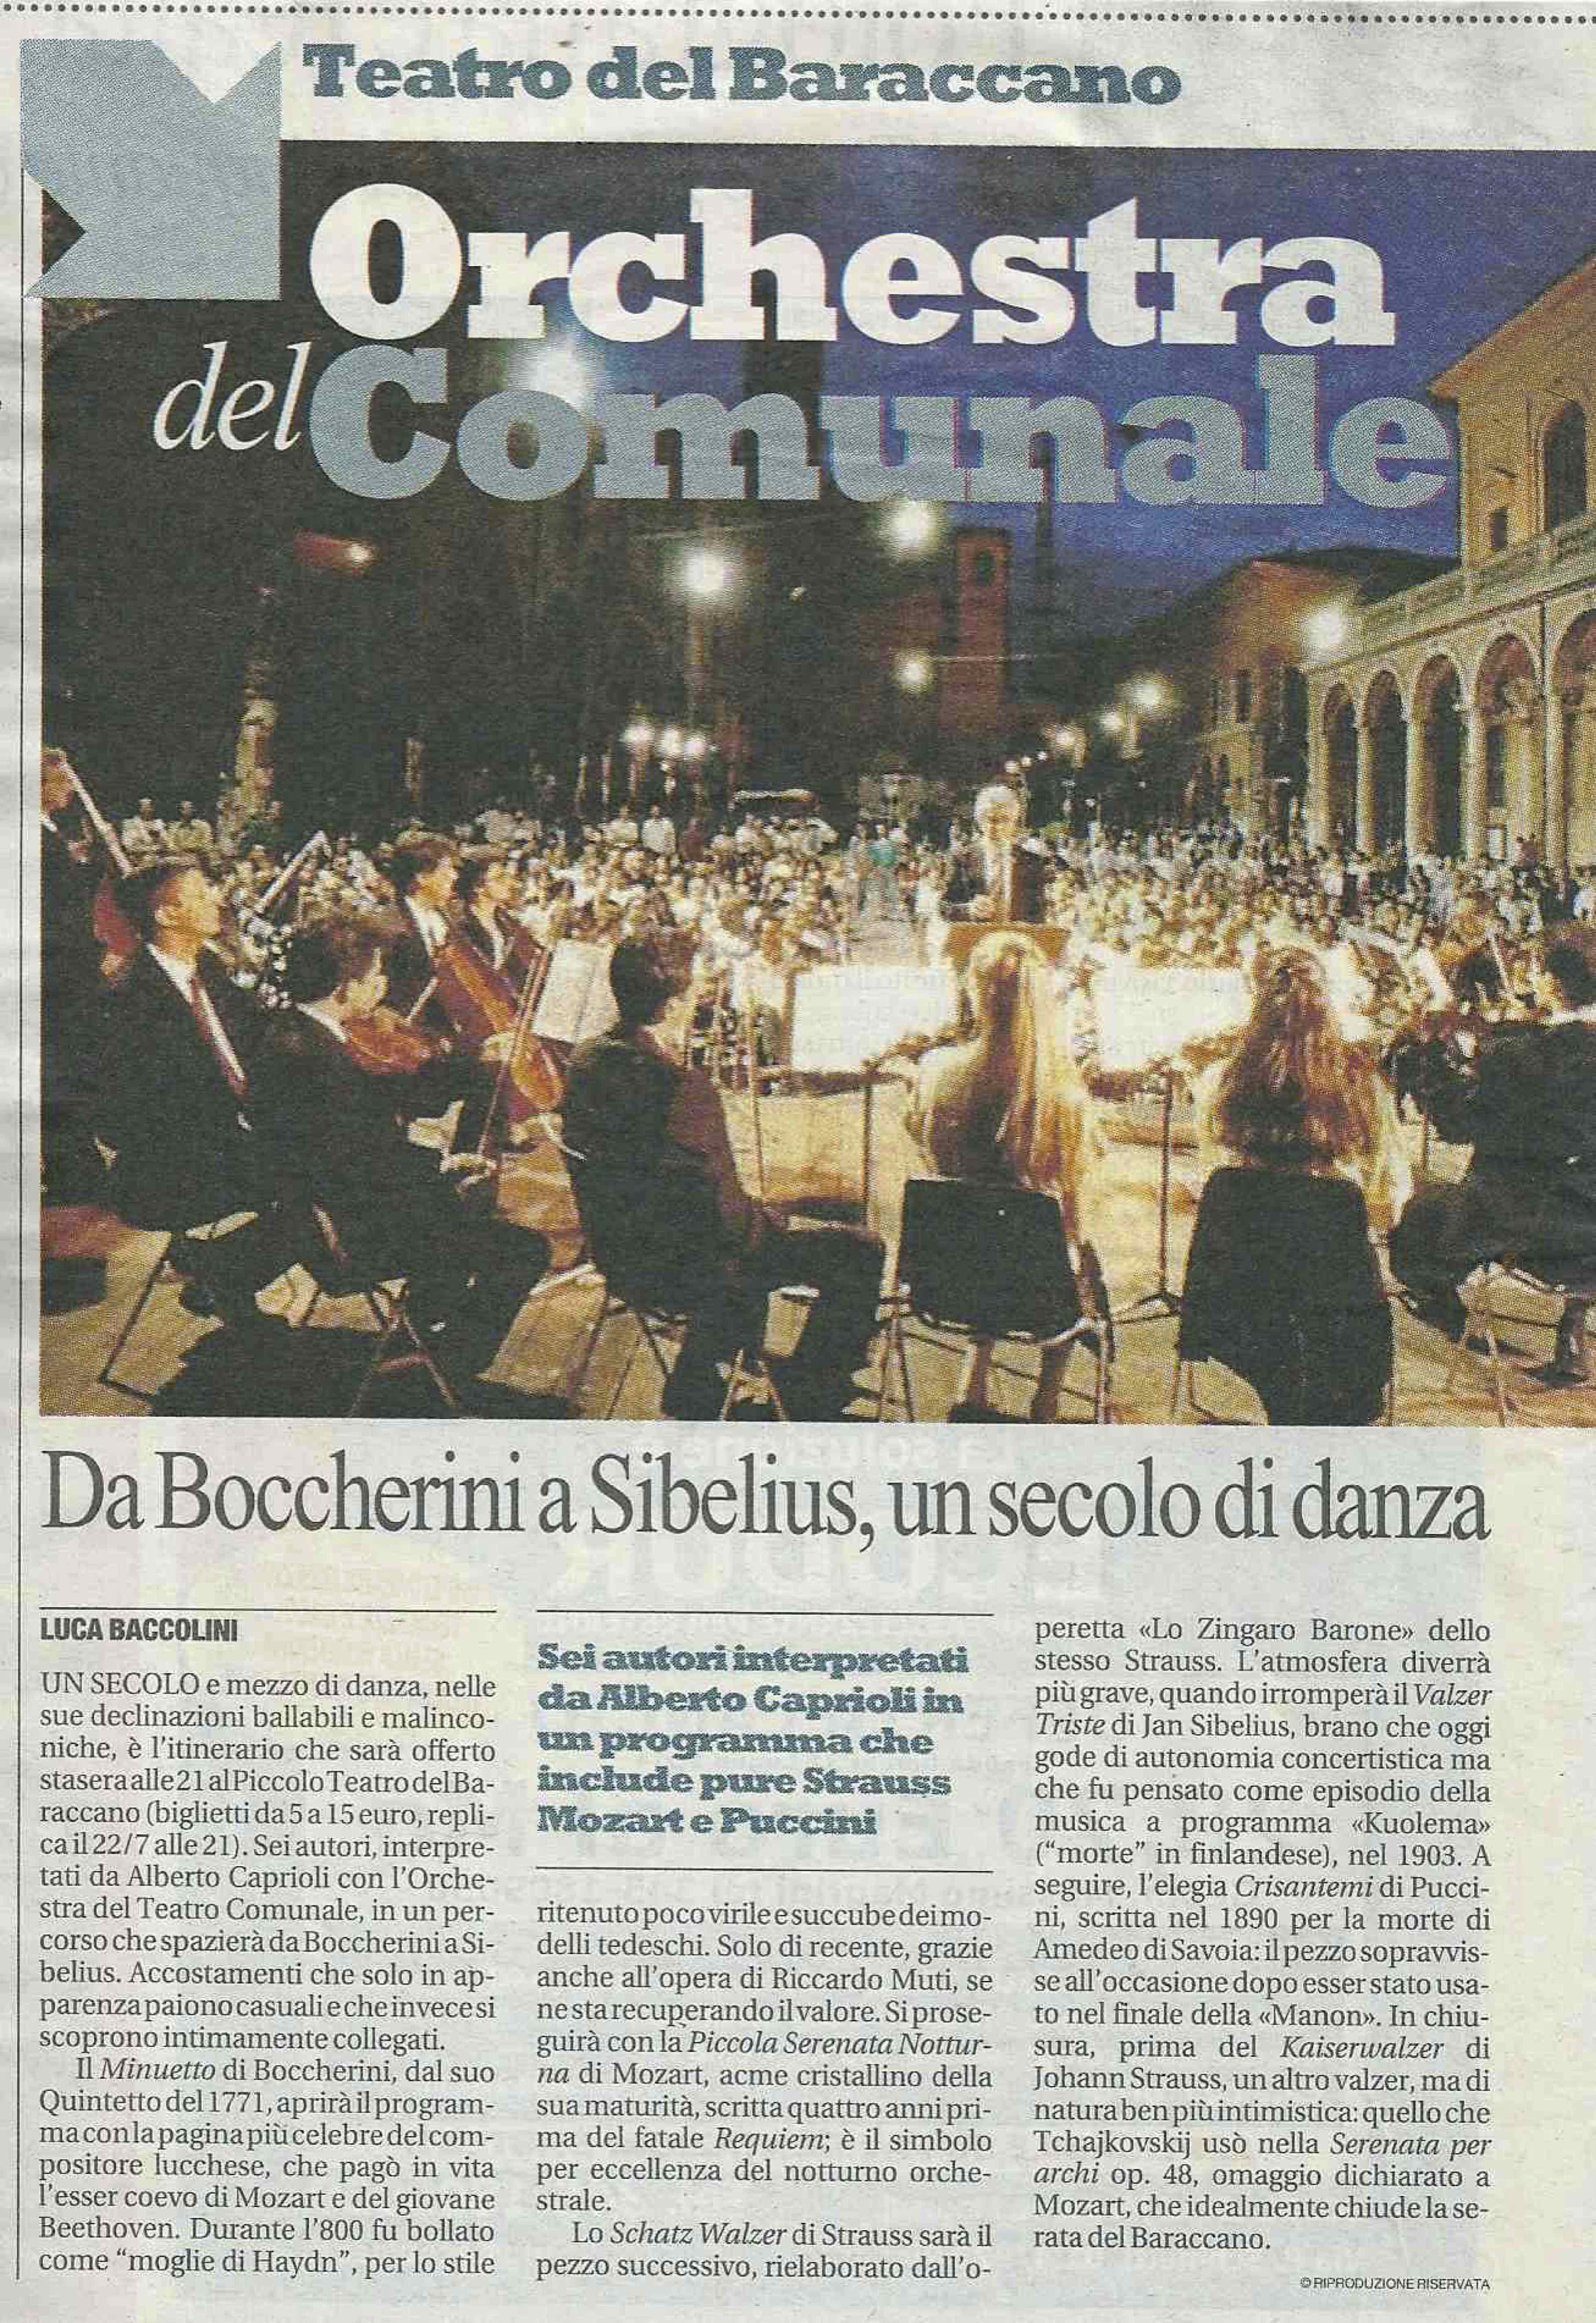 ORCHESTRA DEL TEATRO COMUNALE DI BOLOGNA, ALBERTO CAPRIOLI, DIR. 20,22 LUGLIO 2011